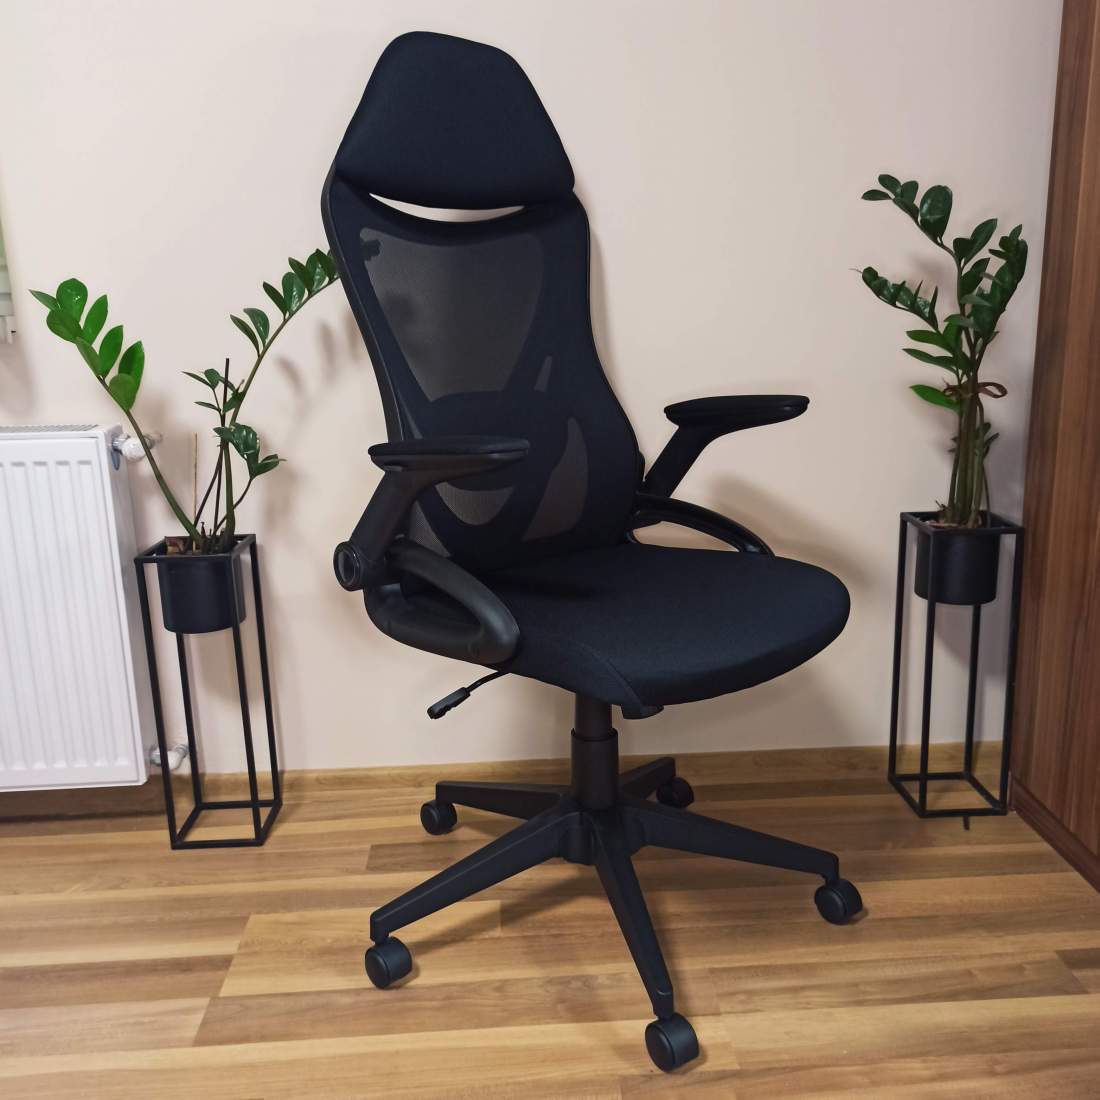 MESH-MF operatív ergotex irodai szék főnöki szék forgószék fotel